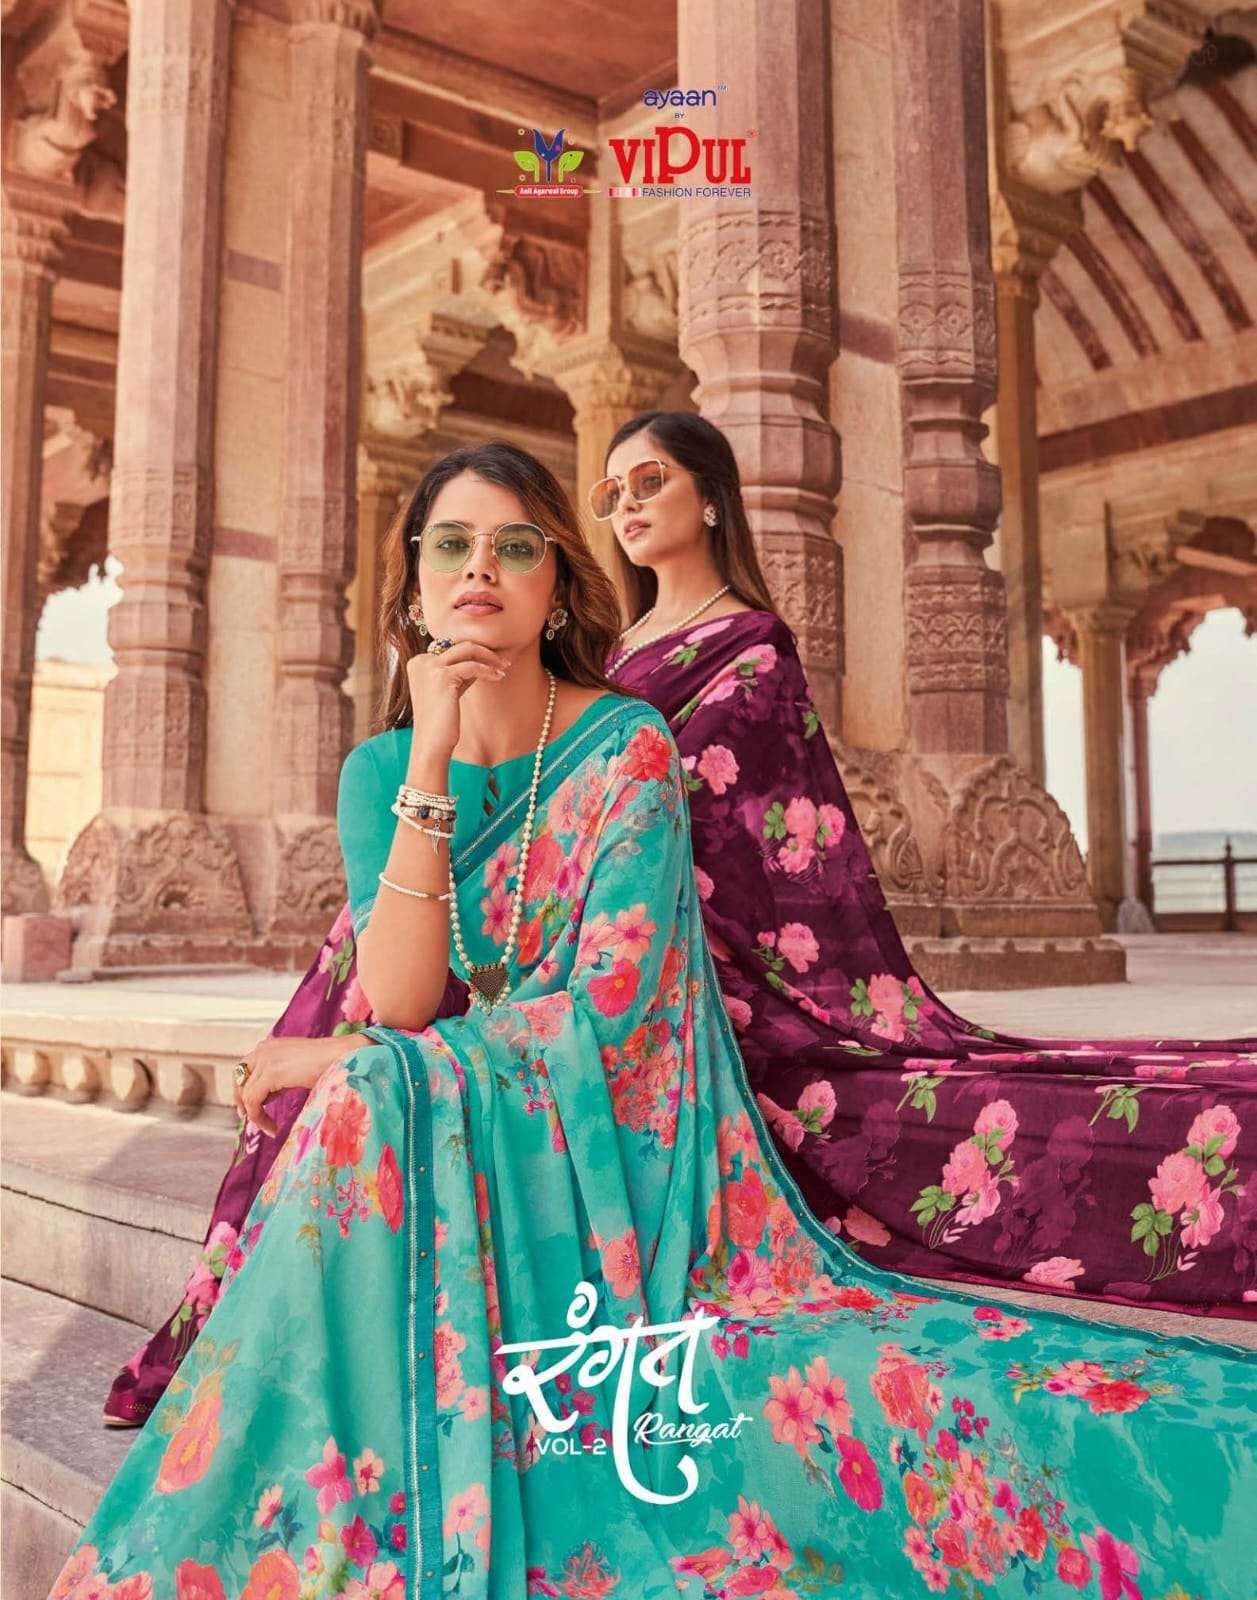 vipul rangat vol 2 georgette printed colorful sarees